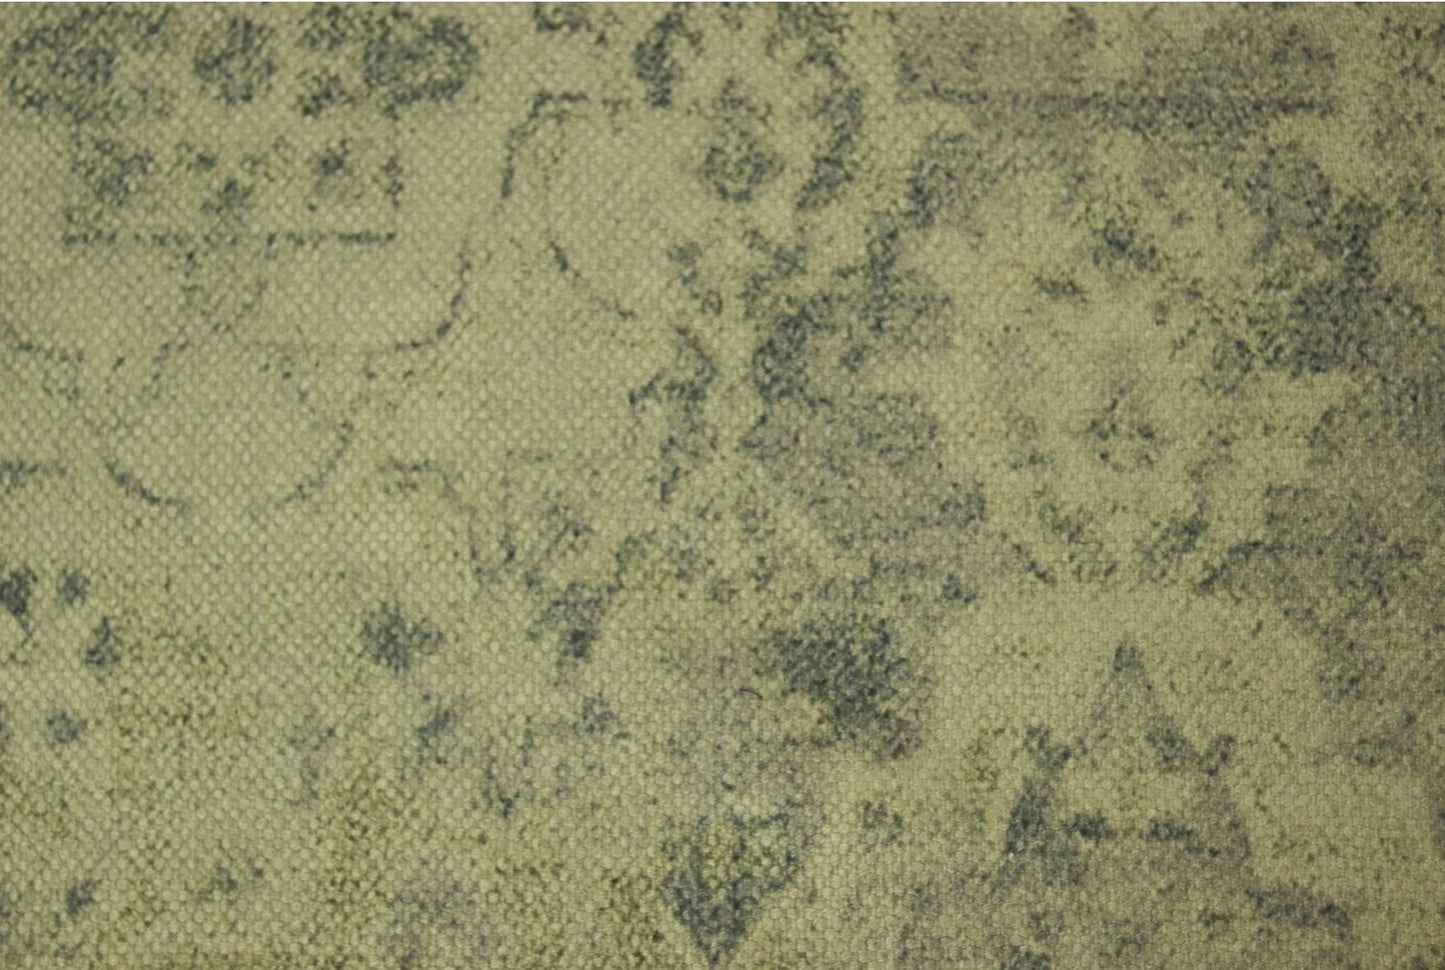 vloerkleed patchwork - 120x180 - beige/geel/groen/blauw - polyester